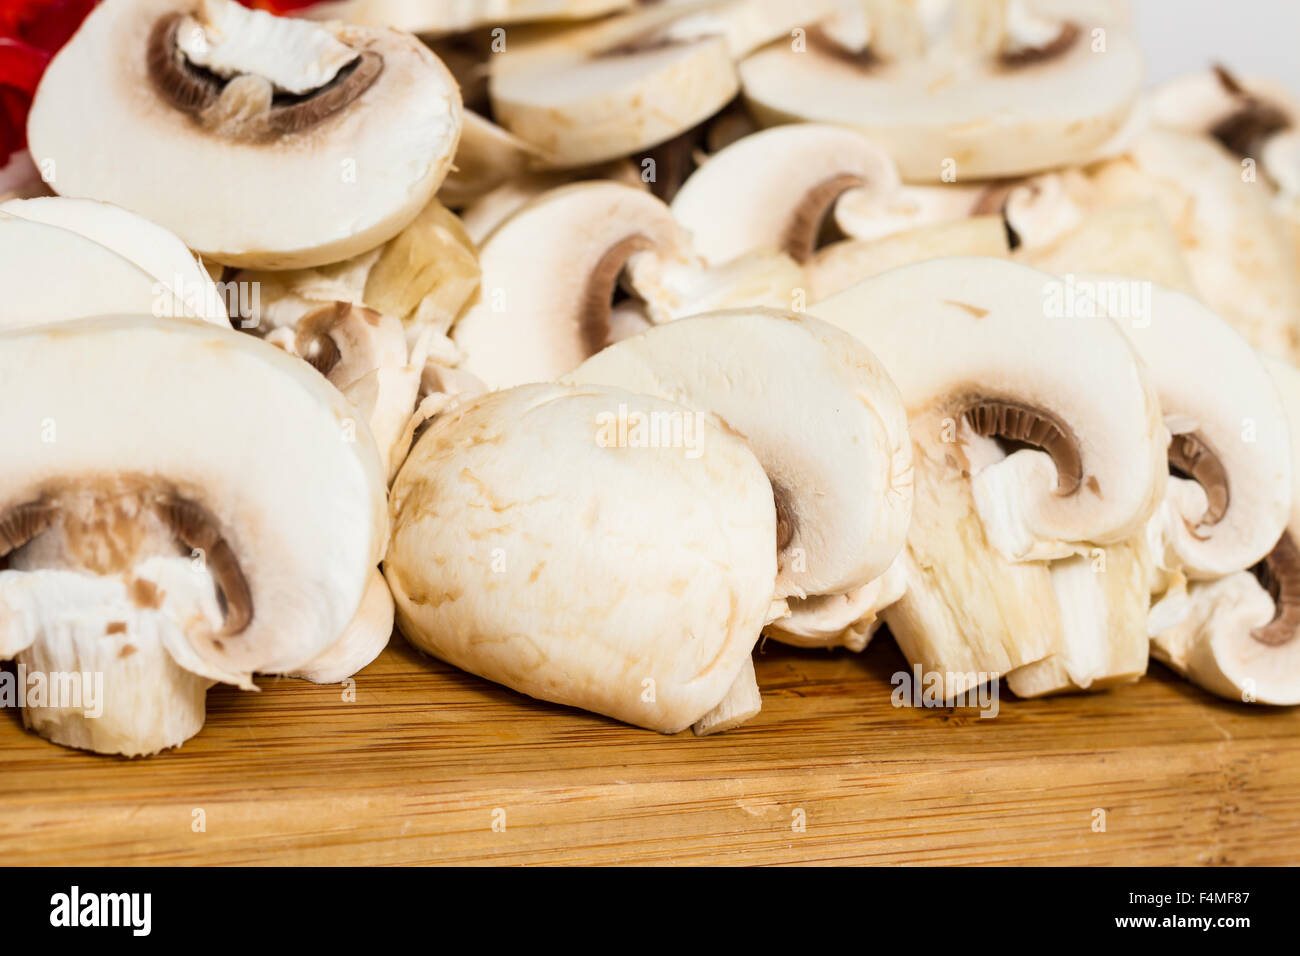 Funghi tagliati a fettine la texture preparata per la cottura. Pronti per essere cucinati. Foto Stock